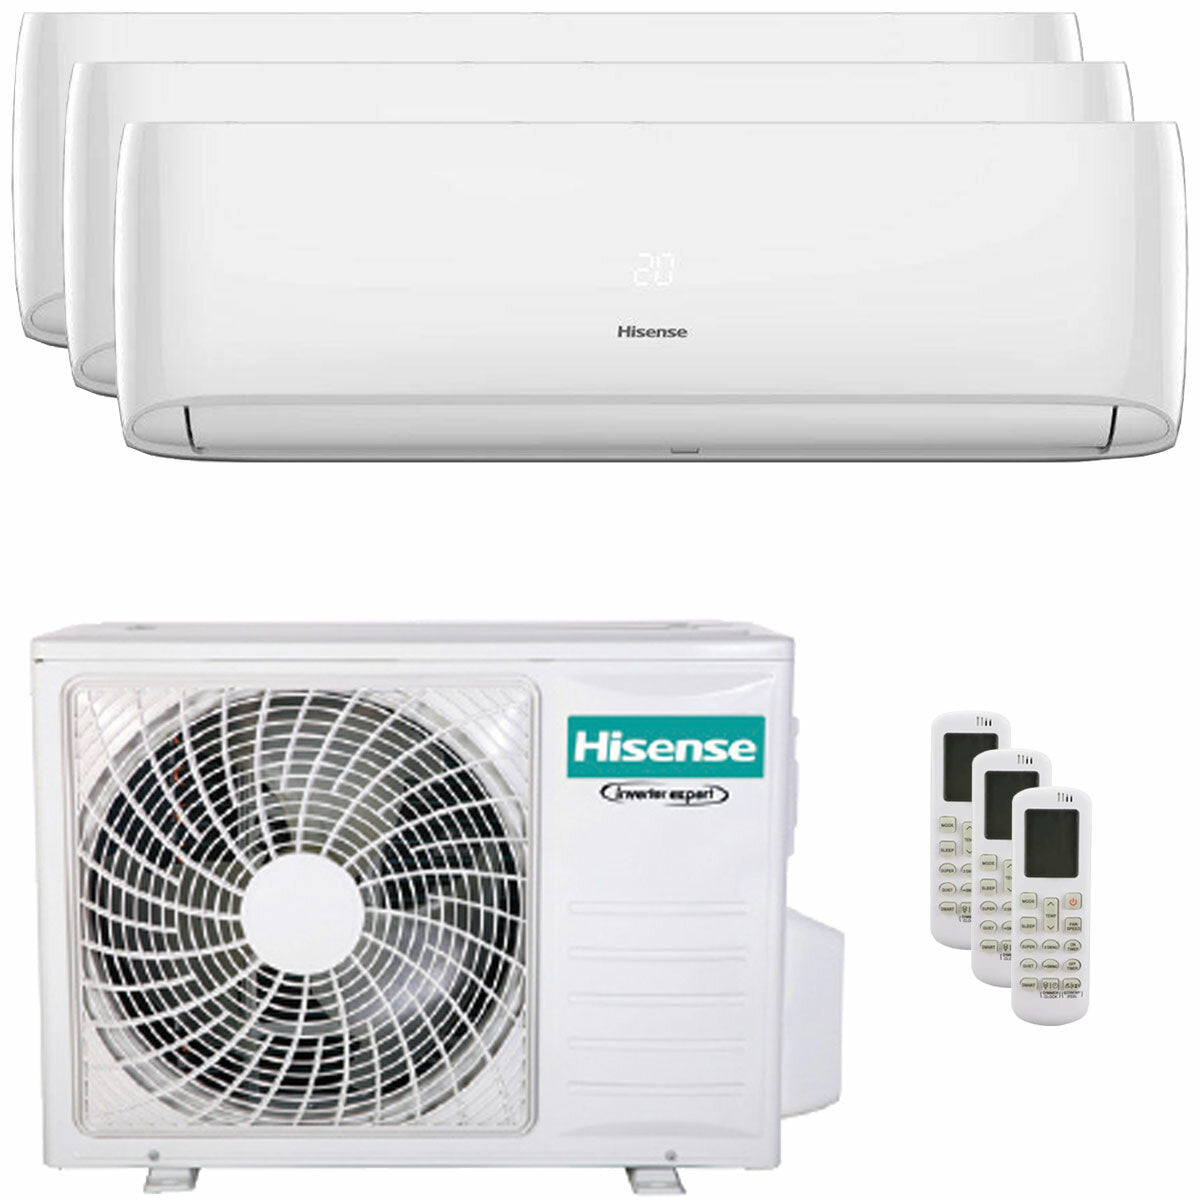 Hisense Hi-Comfort Trial Split Klimaanlage 7000+7000+12000 BTU Inverter A++ WLAN Außengerät 6,3 kW